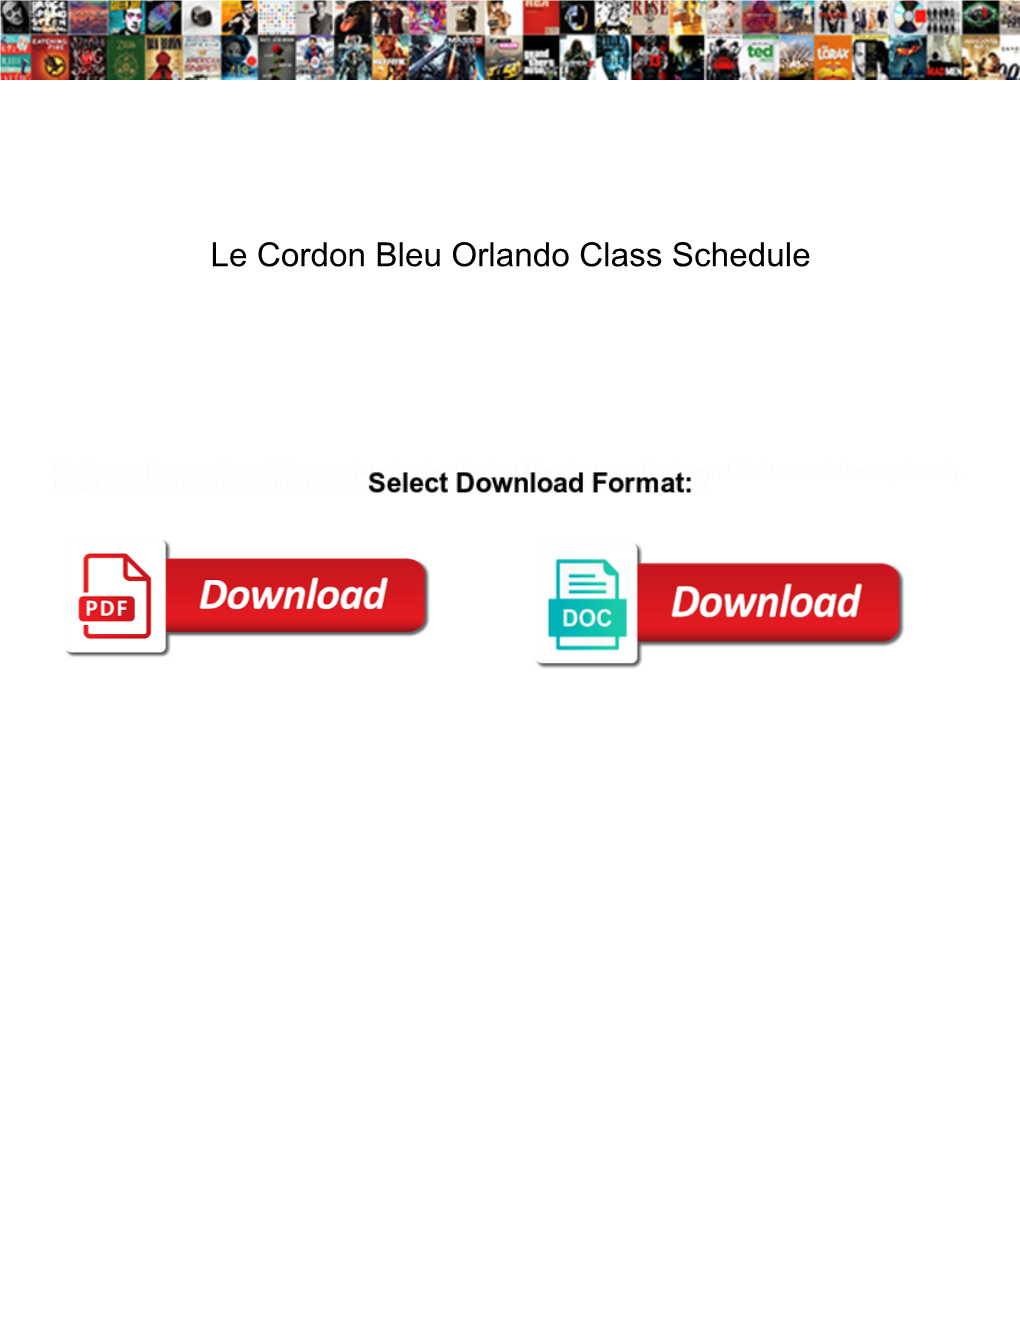 Le Cordon Bleu Orlando Class Schedule